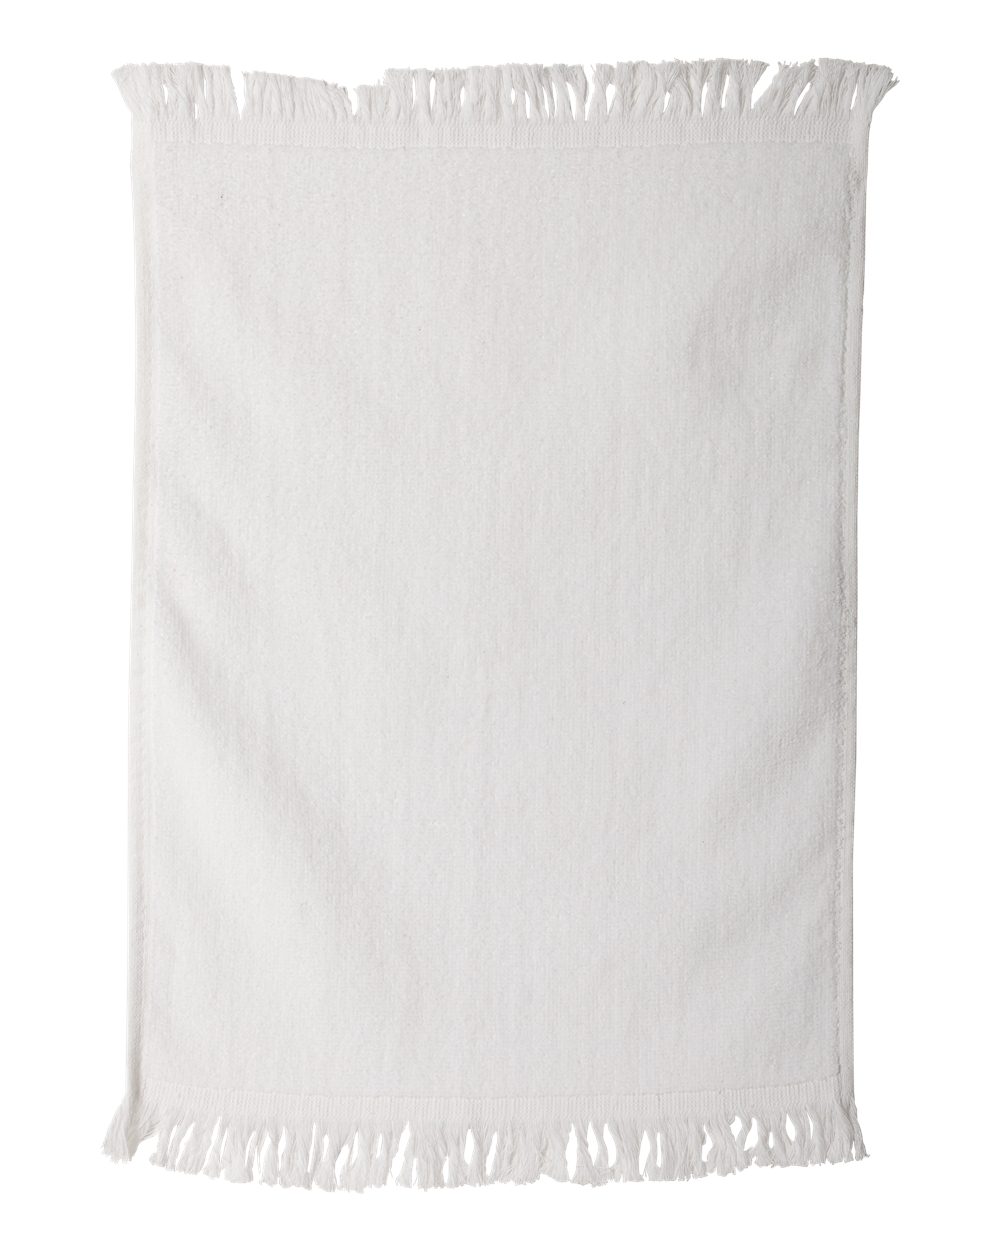 Fringed Towel - C1118-